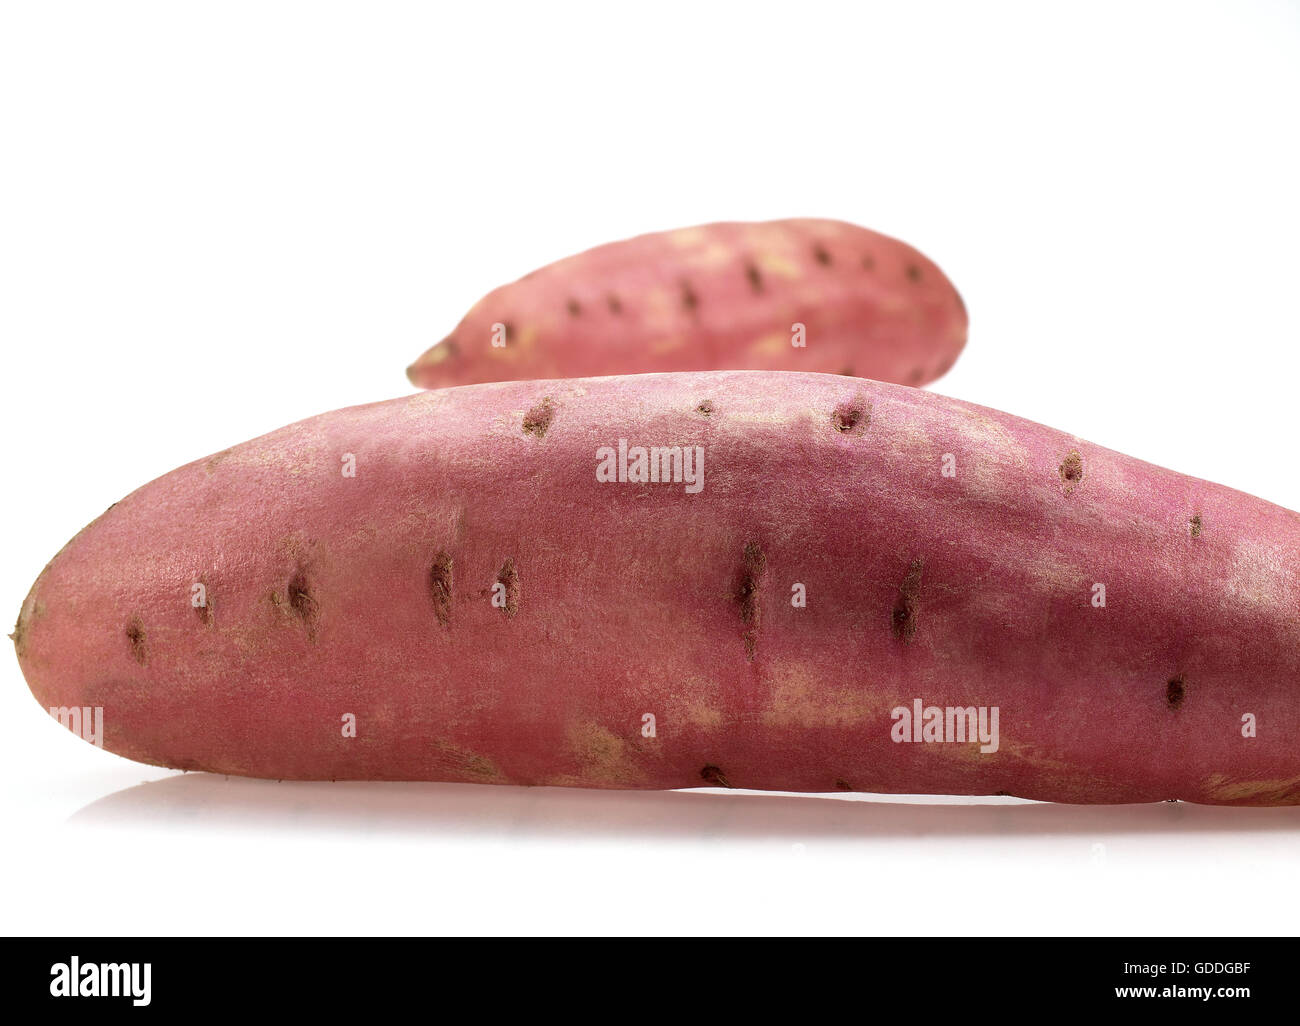 Sweet Potato, ipomoea batatas, Vegetable against White Backgrond Stock Photo